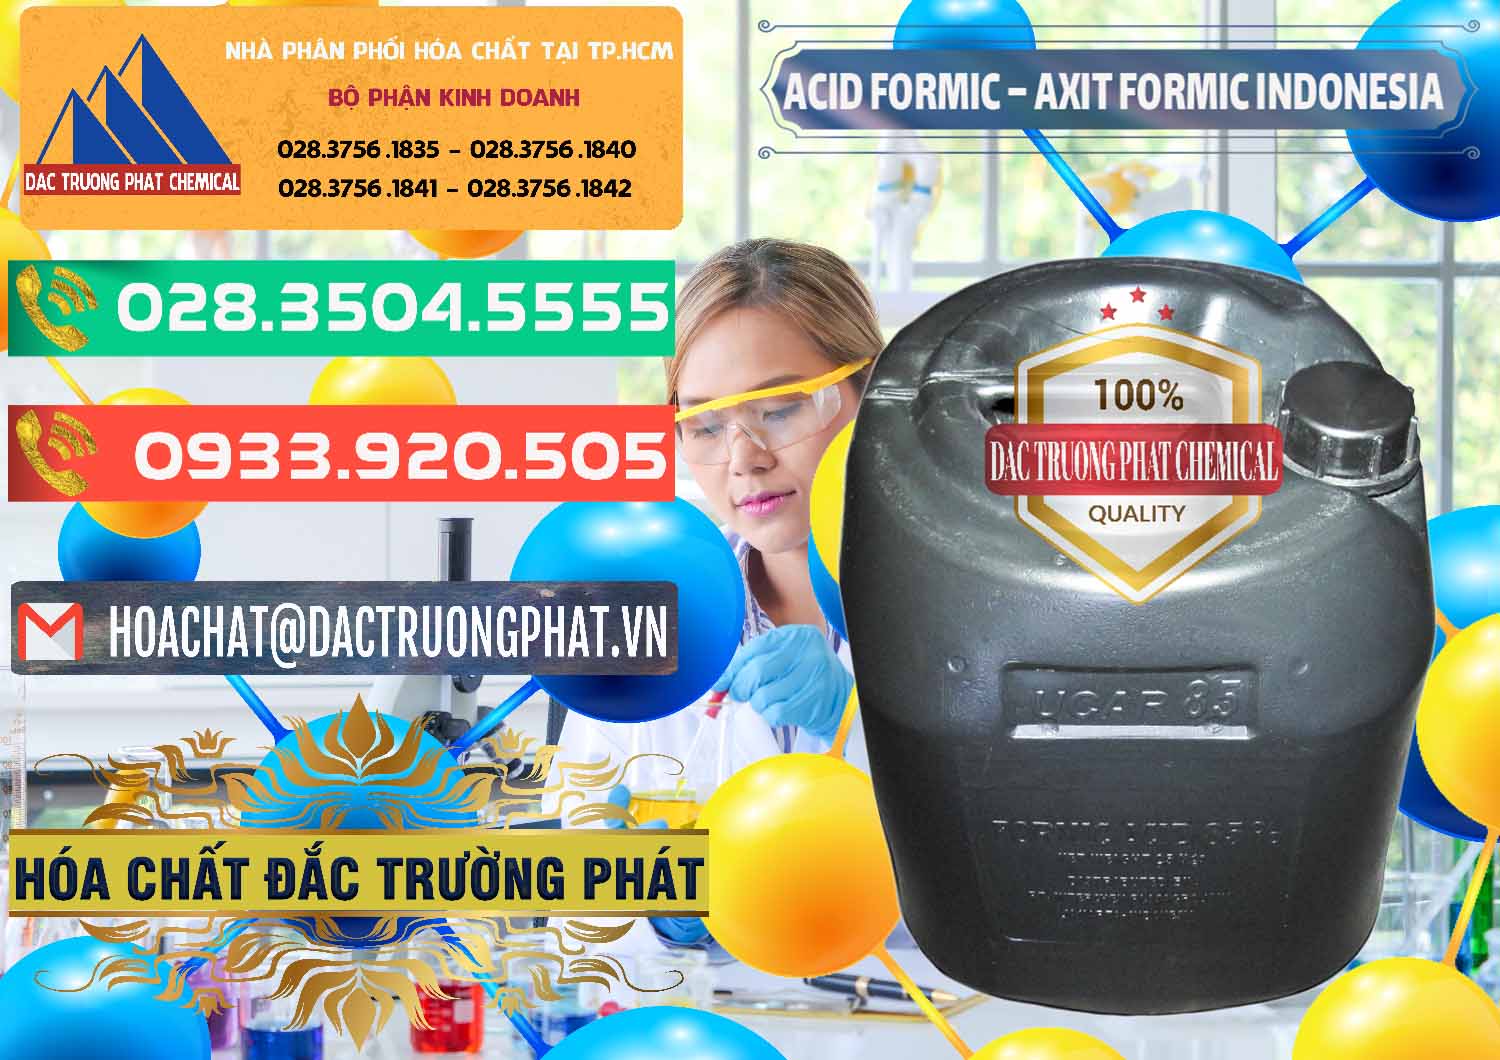 Đơn vị bán - cung ứng Acid Formic - Axit Formic Indonesia - 0026 - Chuyên phân phối _ cung ứng hóa chất tại TP.HCM - congtyhoachat.com.vn